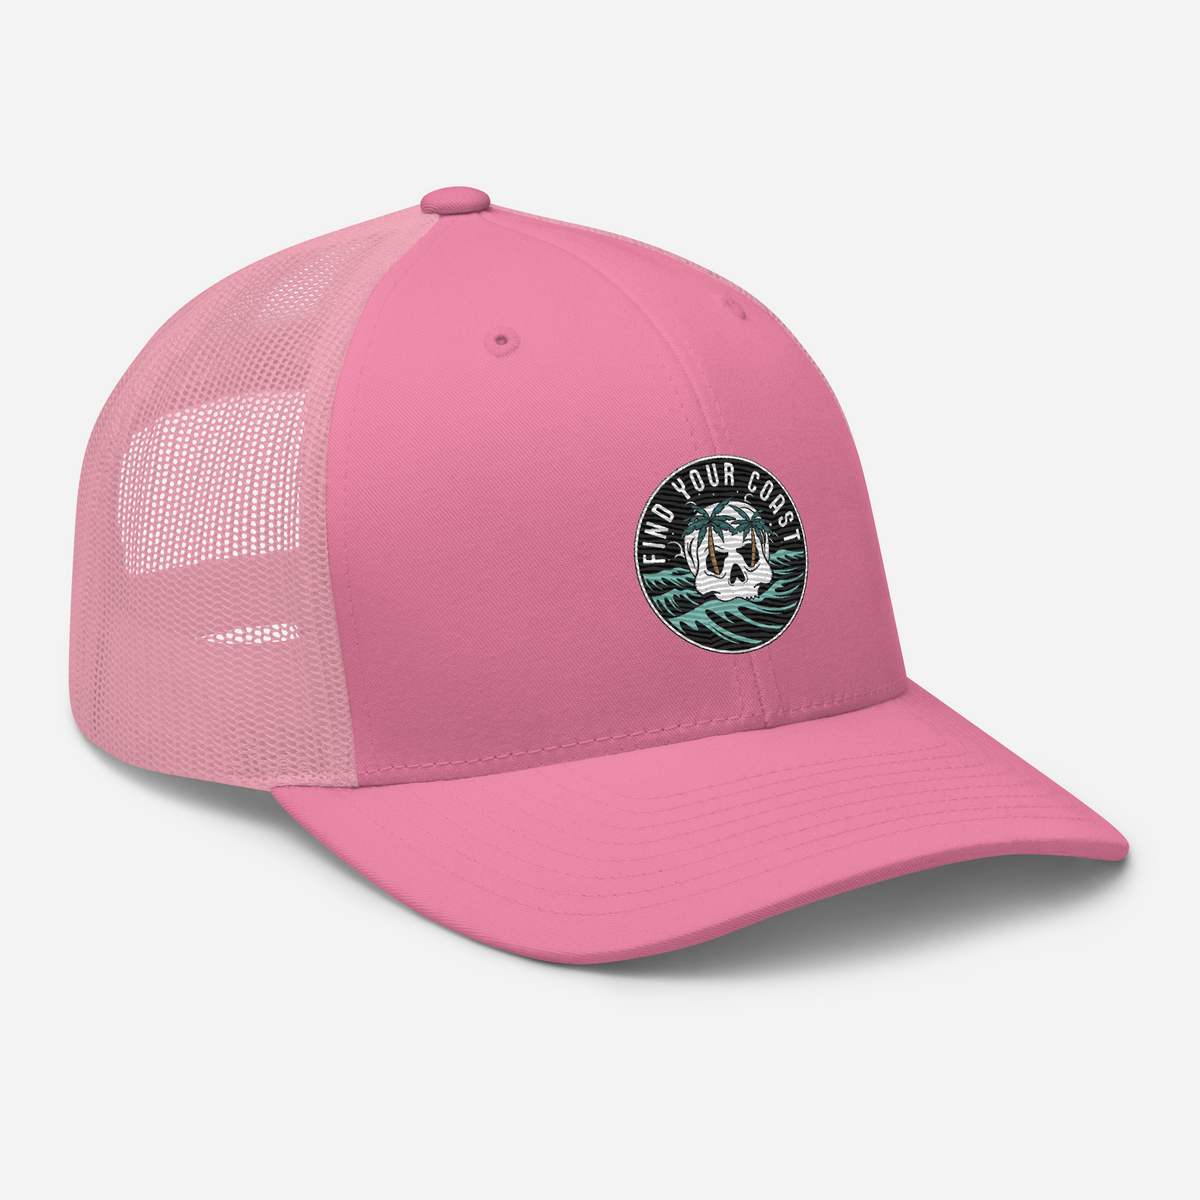 Seaside Beach Mesh Trucker Hat For Men And Women Ideal For